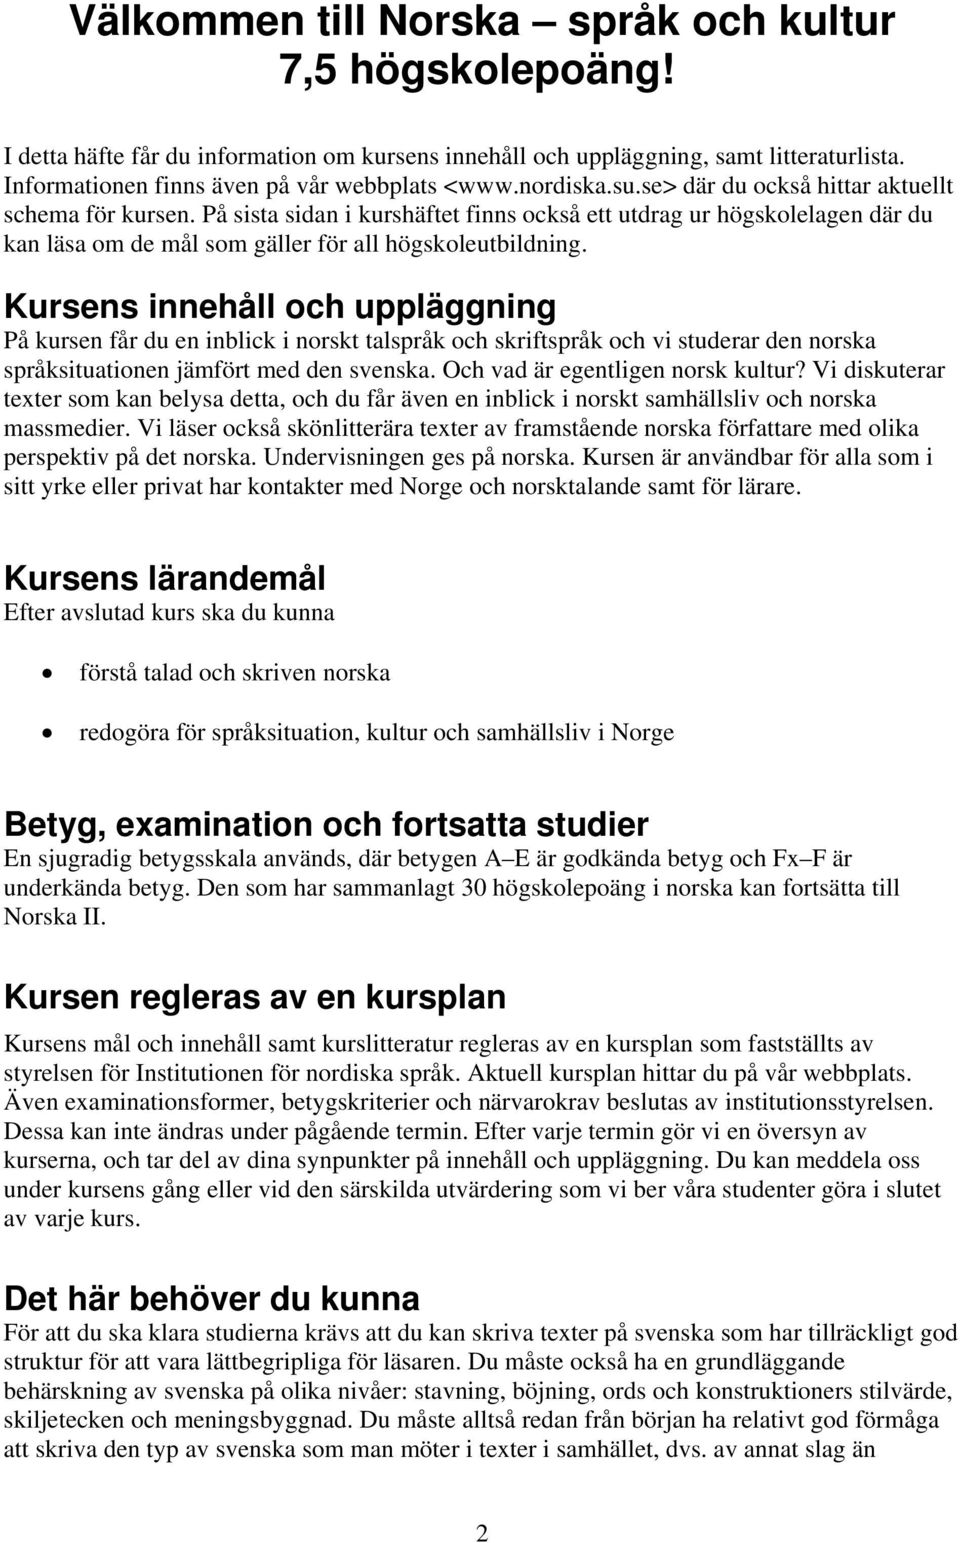 Kursens innehåll och uppläggning På kursen får du en inblick i norskt talspråk och skriftspråk och vi studerar den norska språksituationen jämfört med den svenska. Och vad är egentligen norsk kultur?